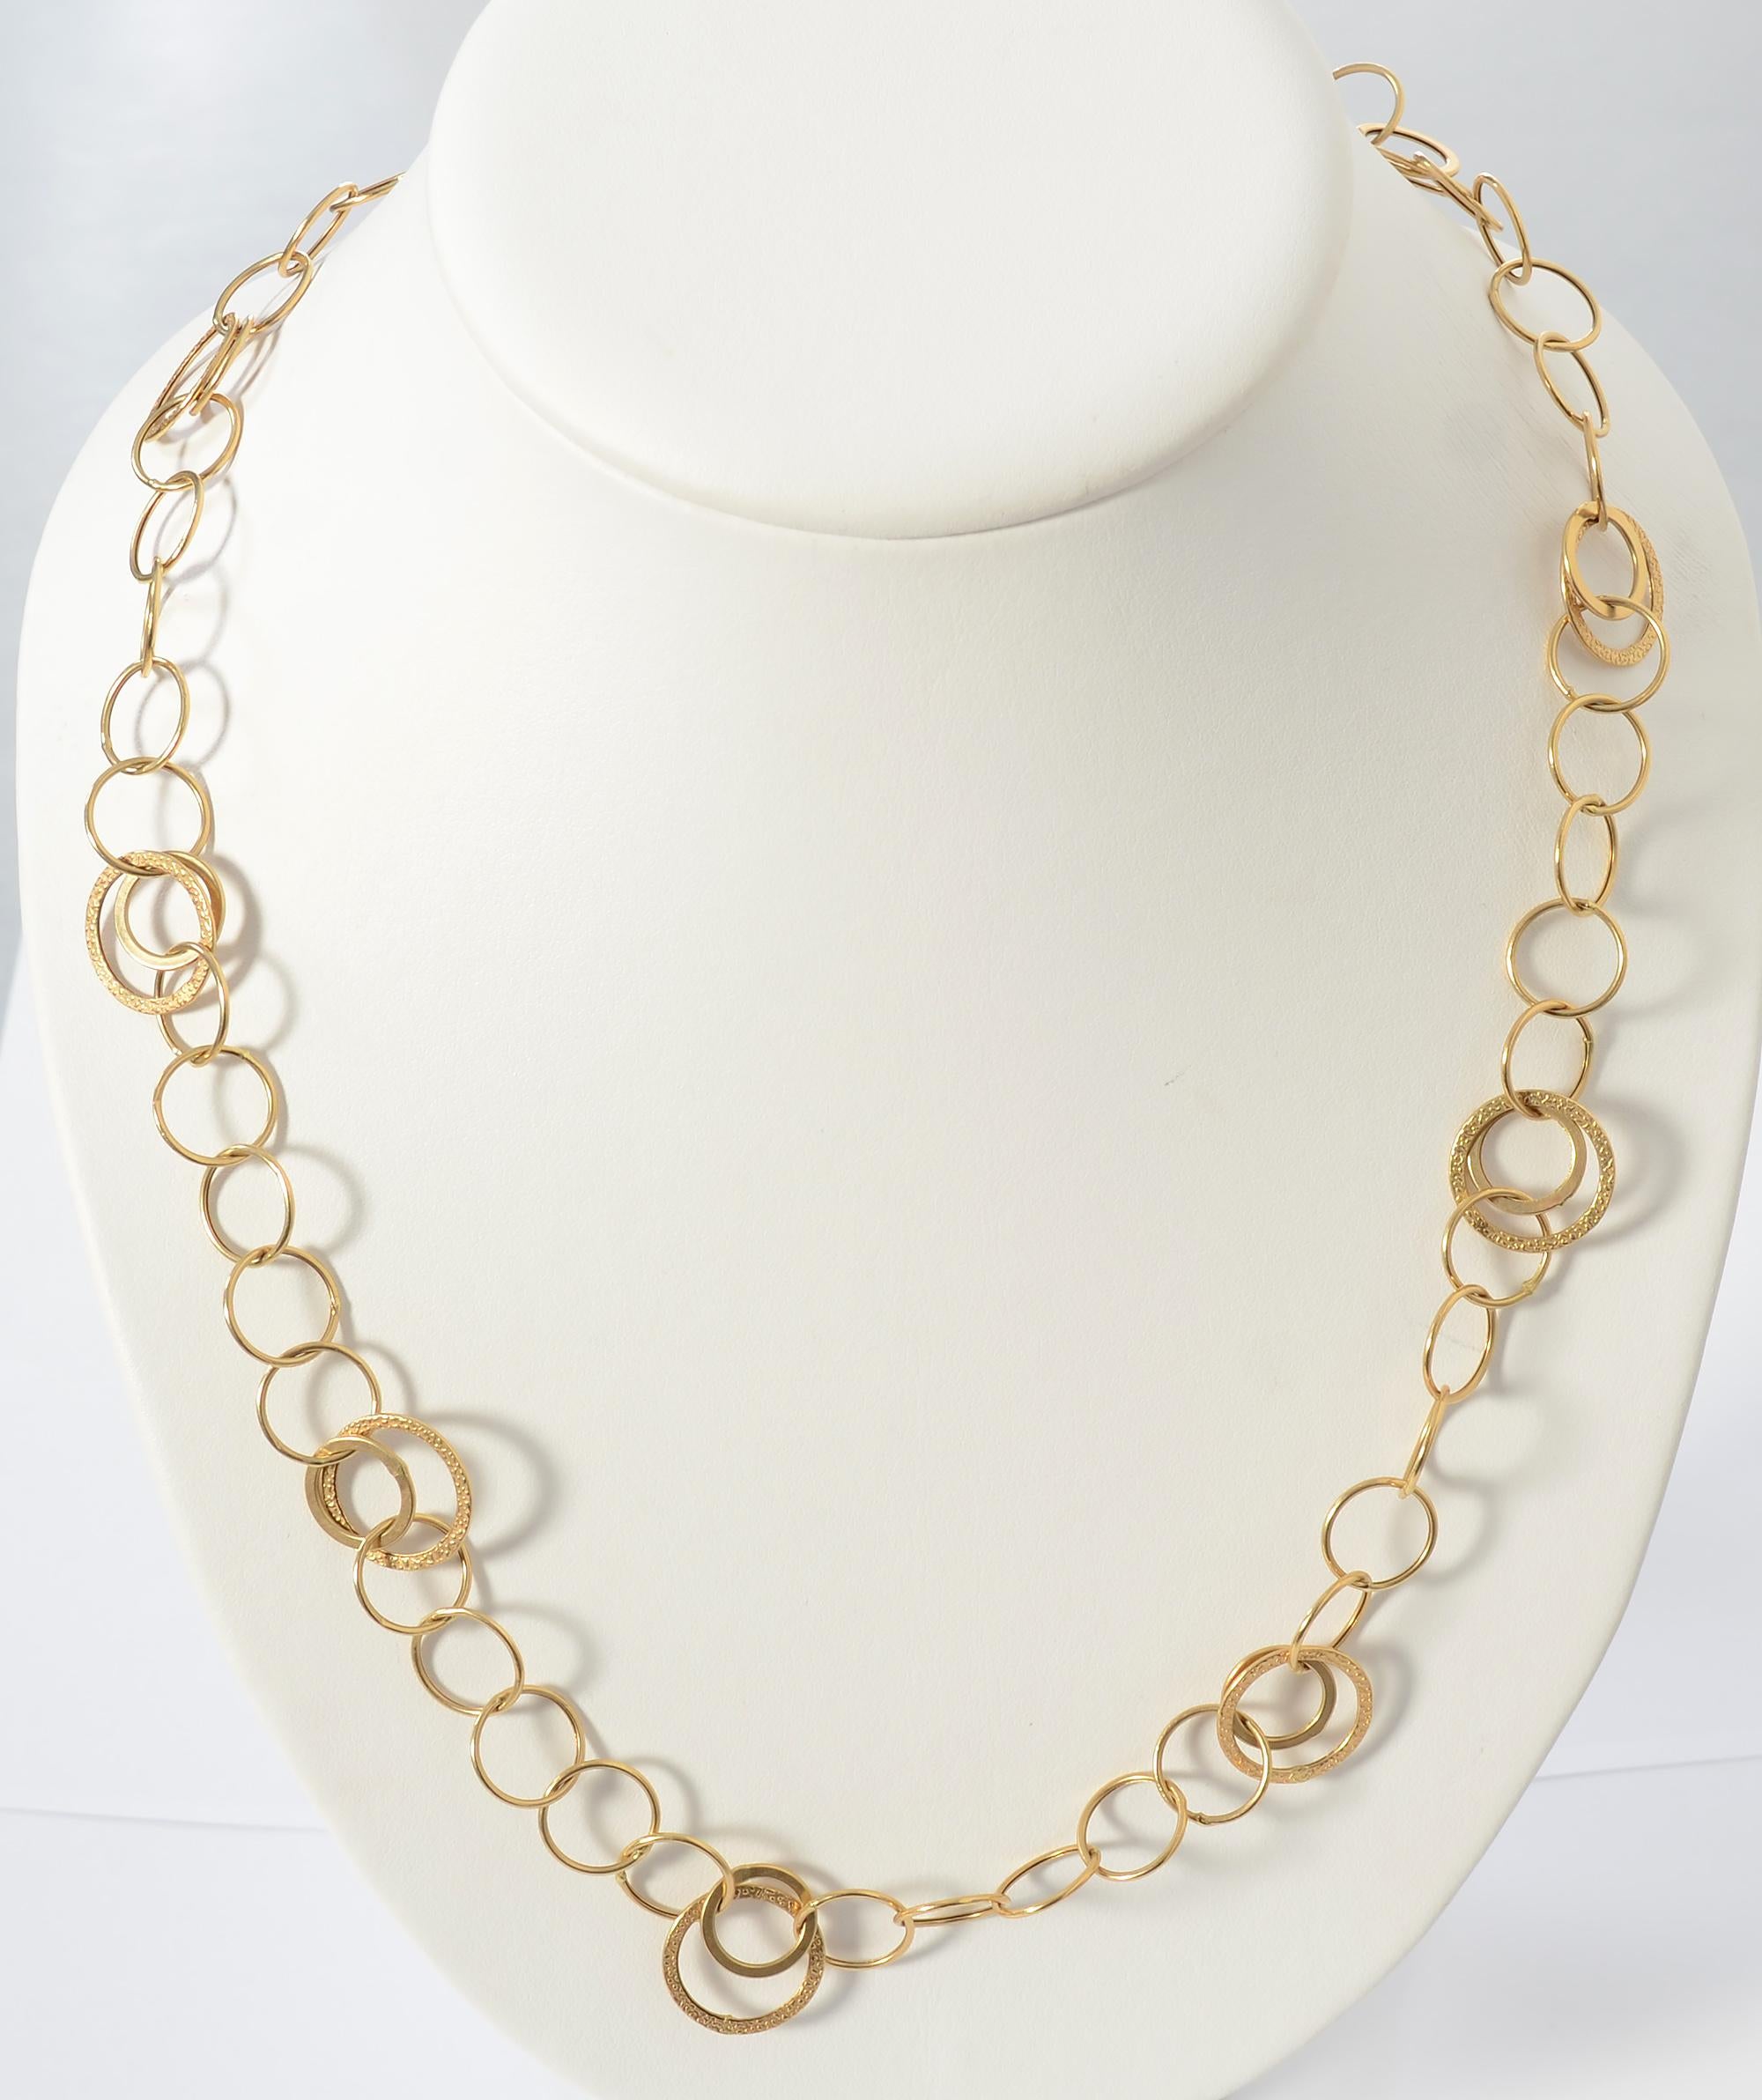 Merveilleusement sportif, ce long collier à chaîne en or est composé de trois cercles de tailles différentes. Deux des tailles ont une finition brillante et la plus grande a une texture en relief. Les plus grands cercles ont un diamètre de 5/8